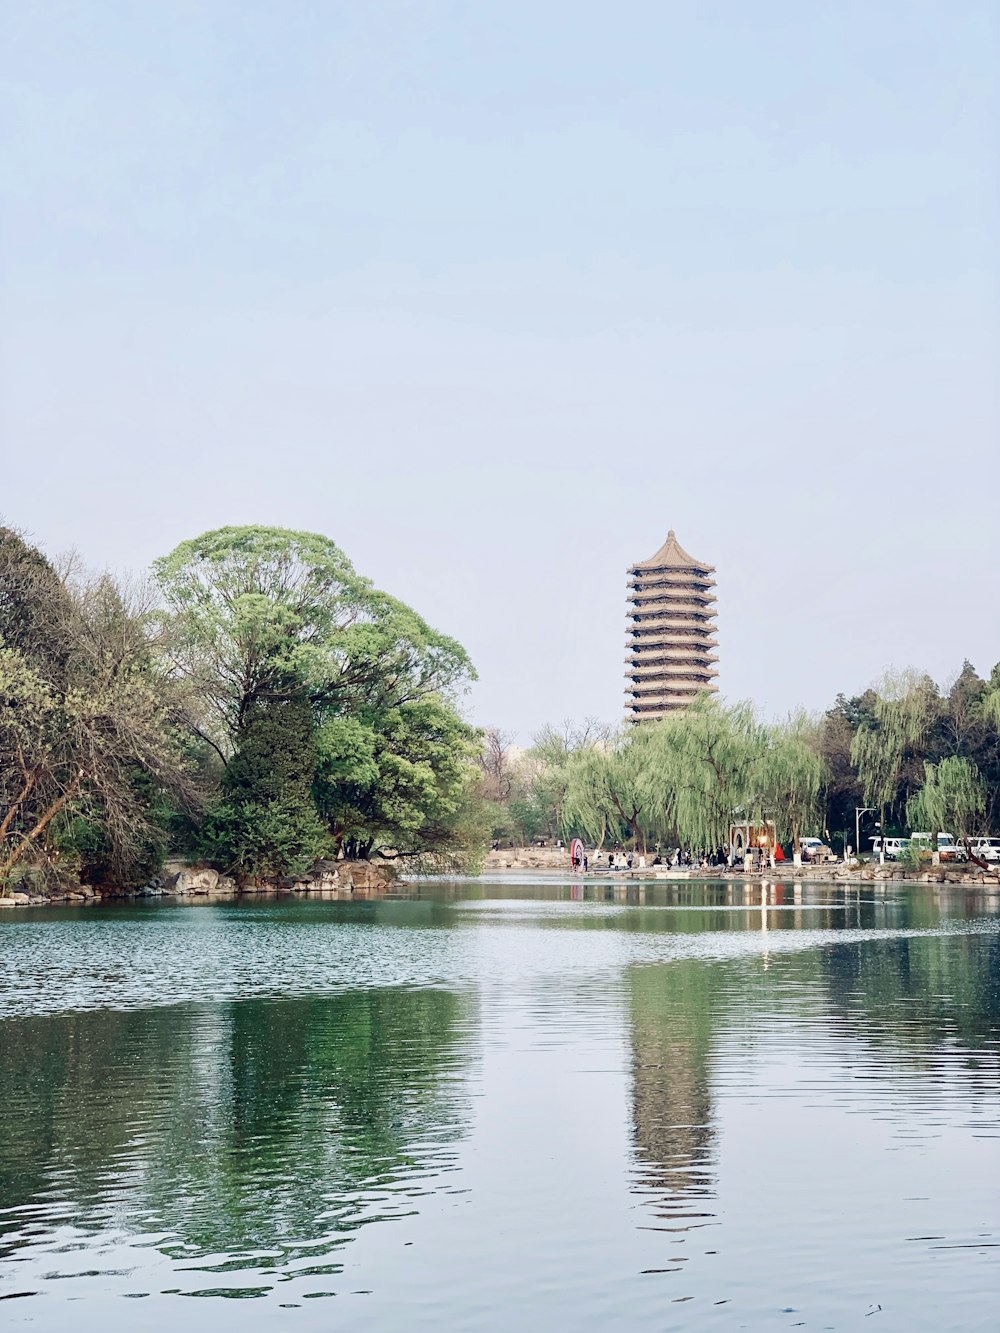 Bâtiment de pagode brune au bord d’un lac